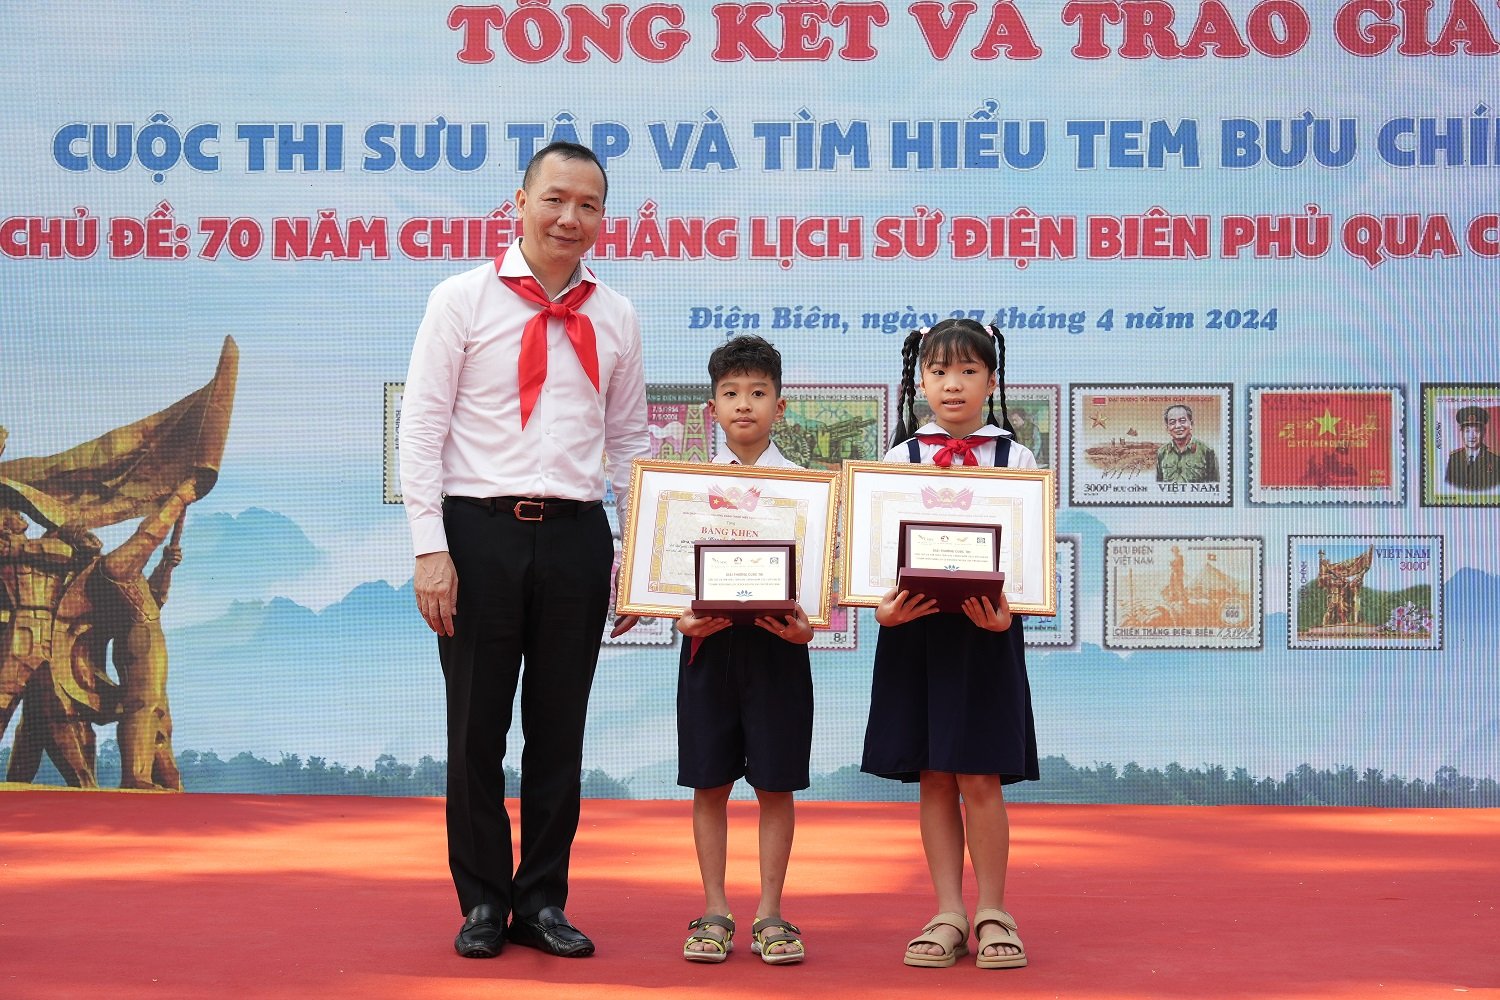 Ông Lê Quốc Anh, Phó Tổng giám đốc Tổng công ty Bưu điện Việt Nam trao phần thưởng cho 02 học sinh đoạt giải Nhất